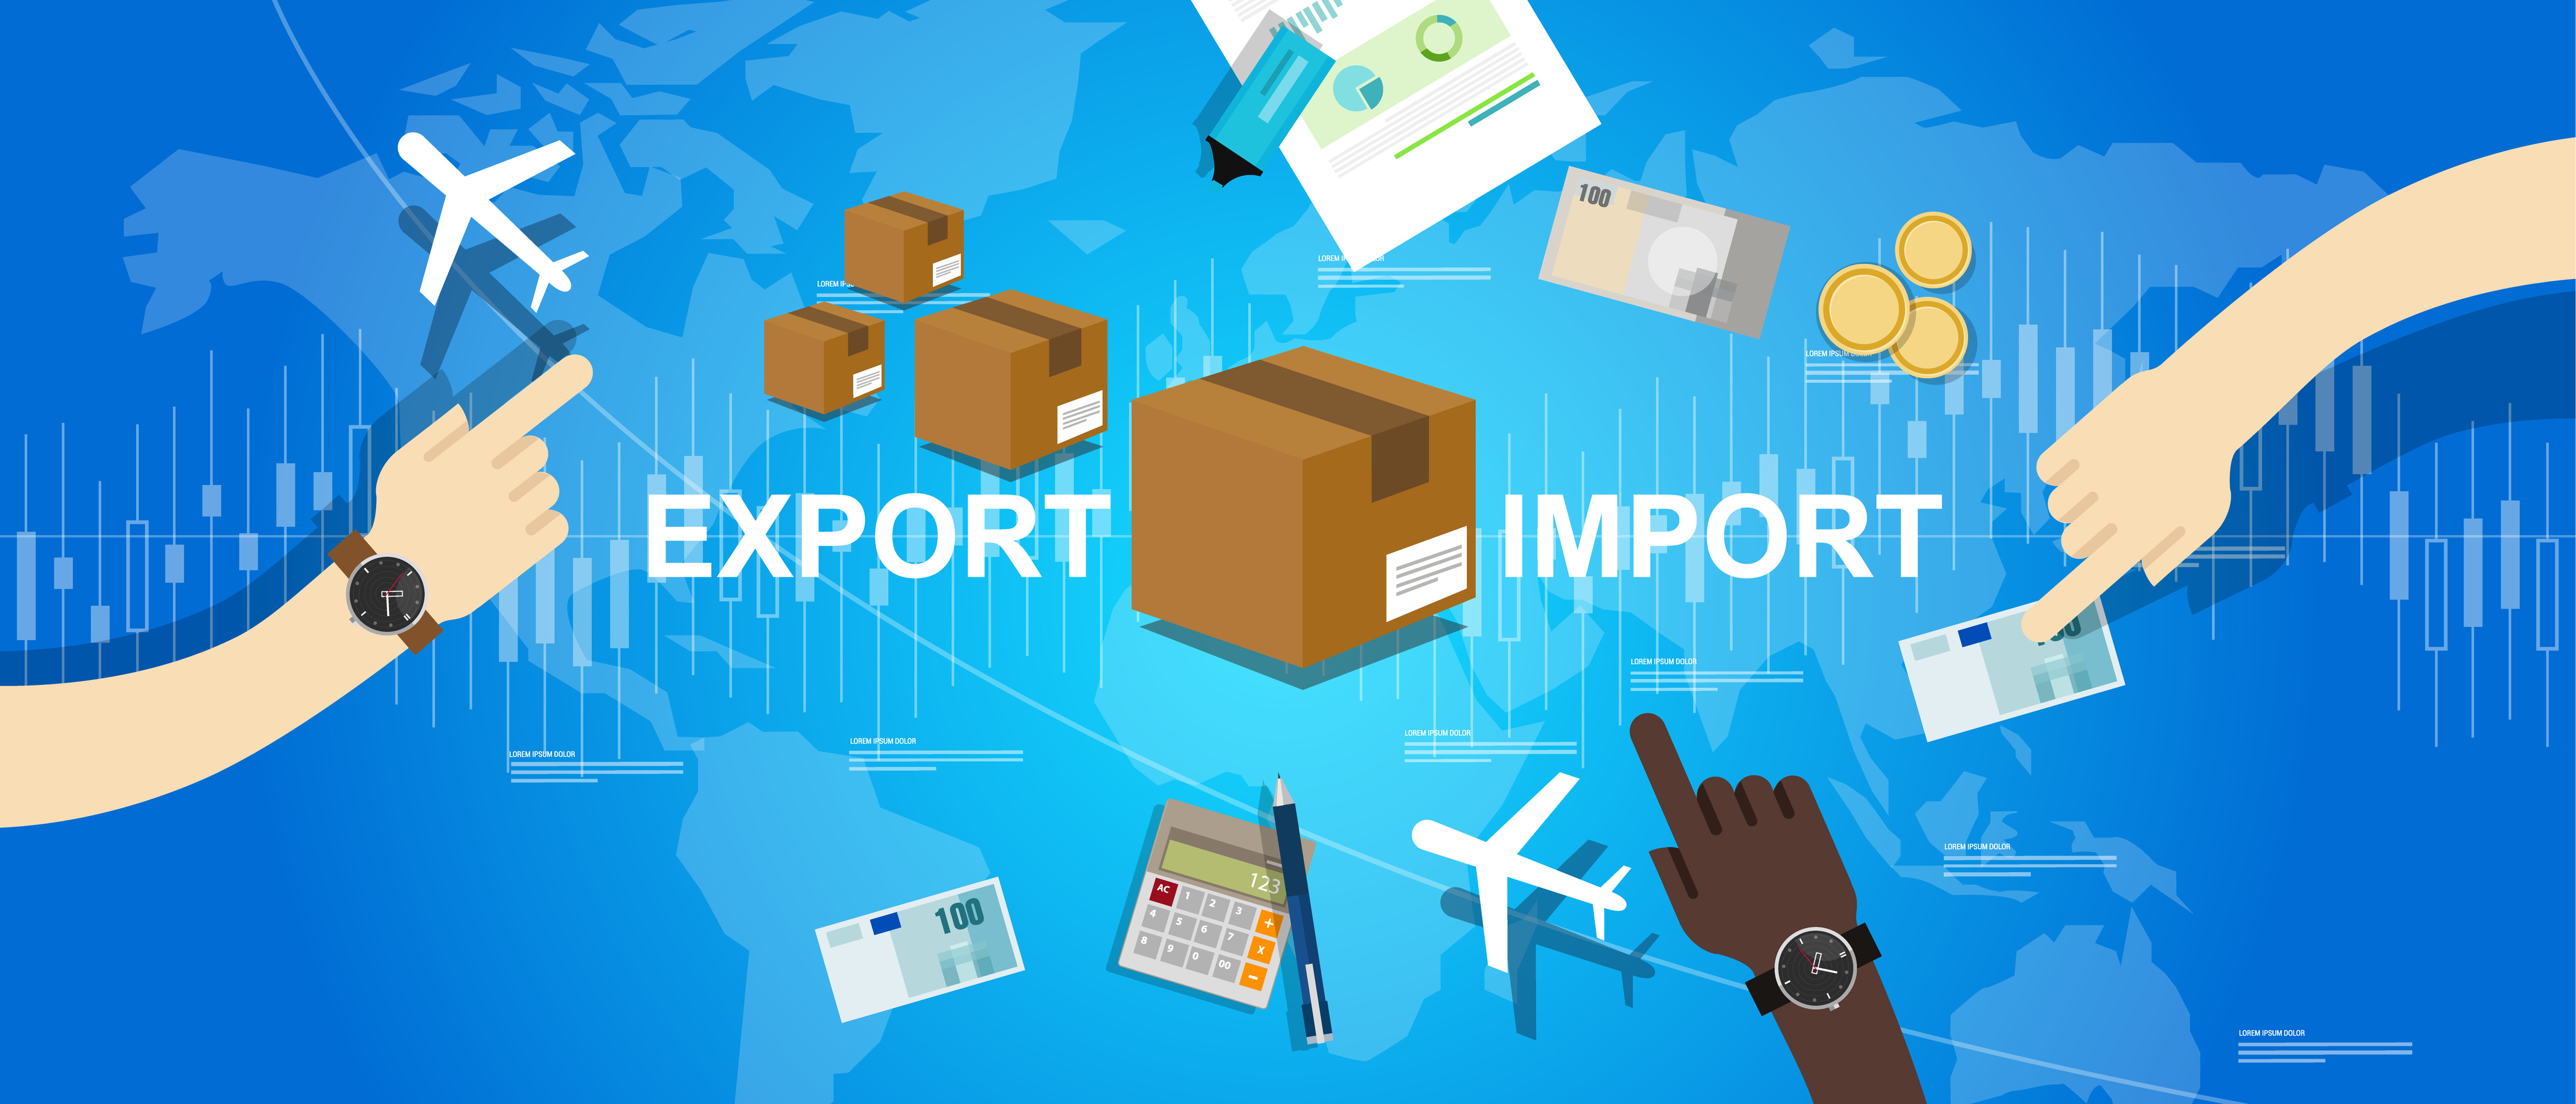 Код тн вэд 6104620000. Импорт иллюстрация. Экспорт. Экспорт и импорт. Экспортно-импортные операции.